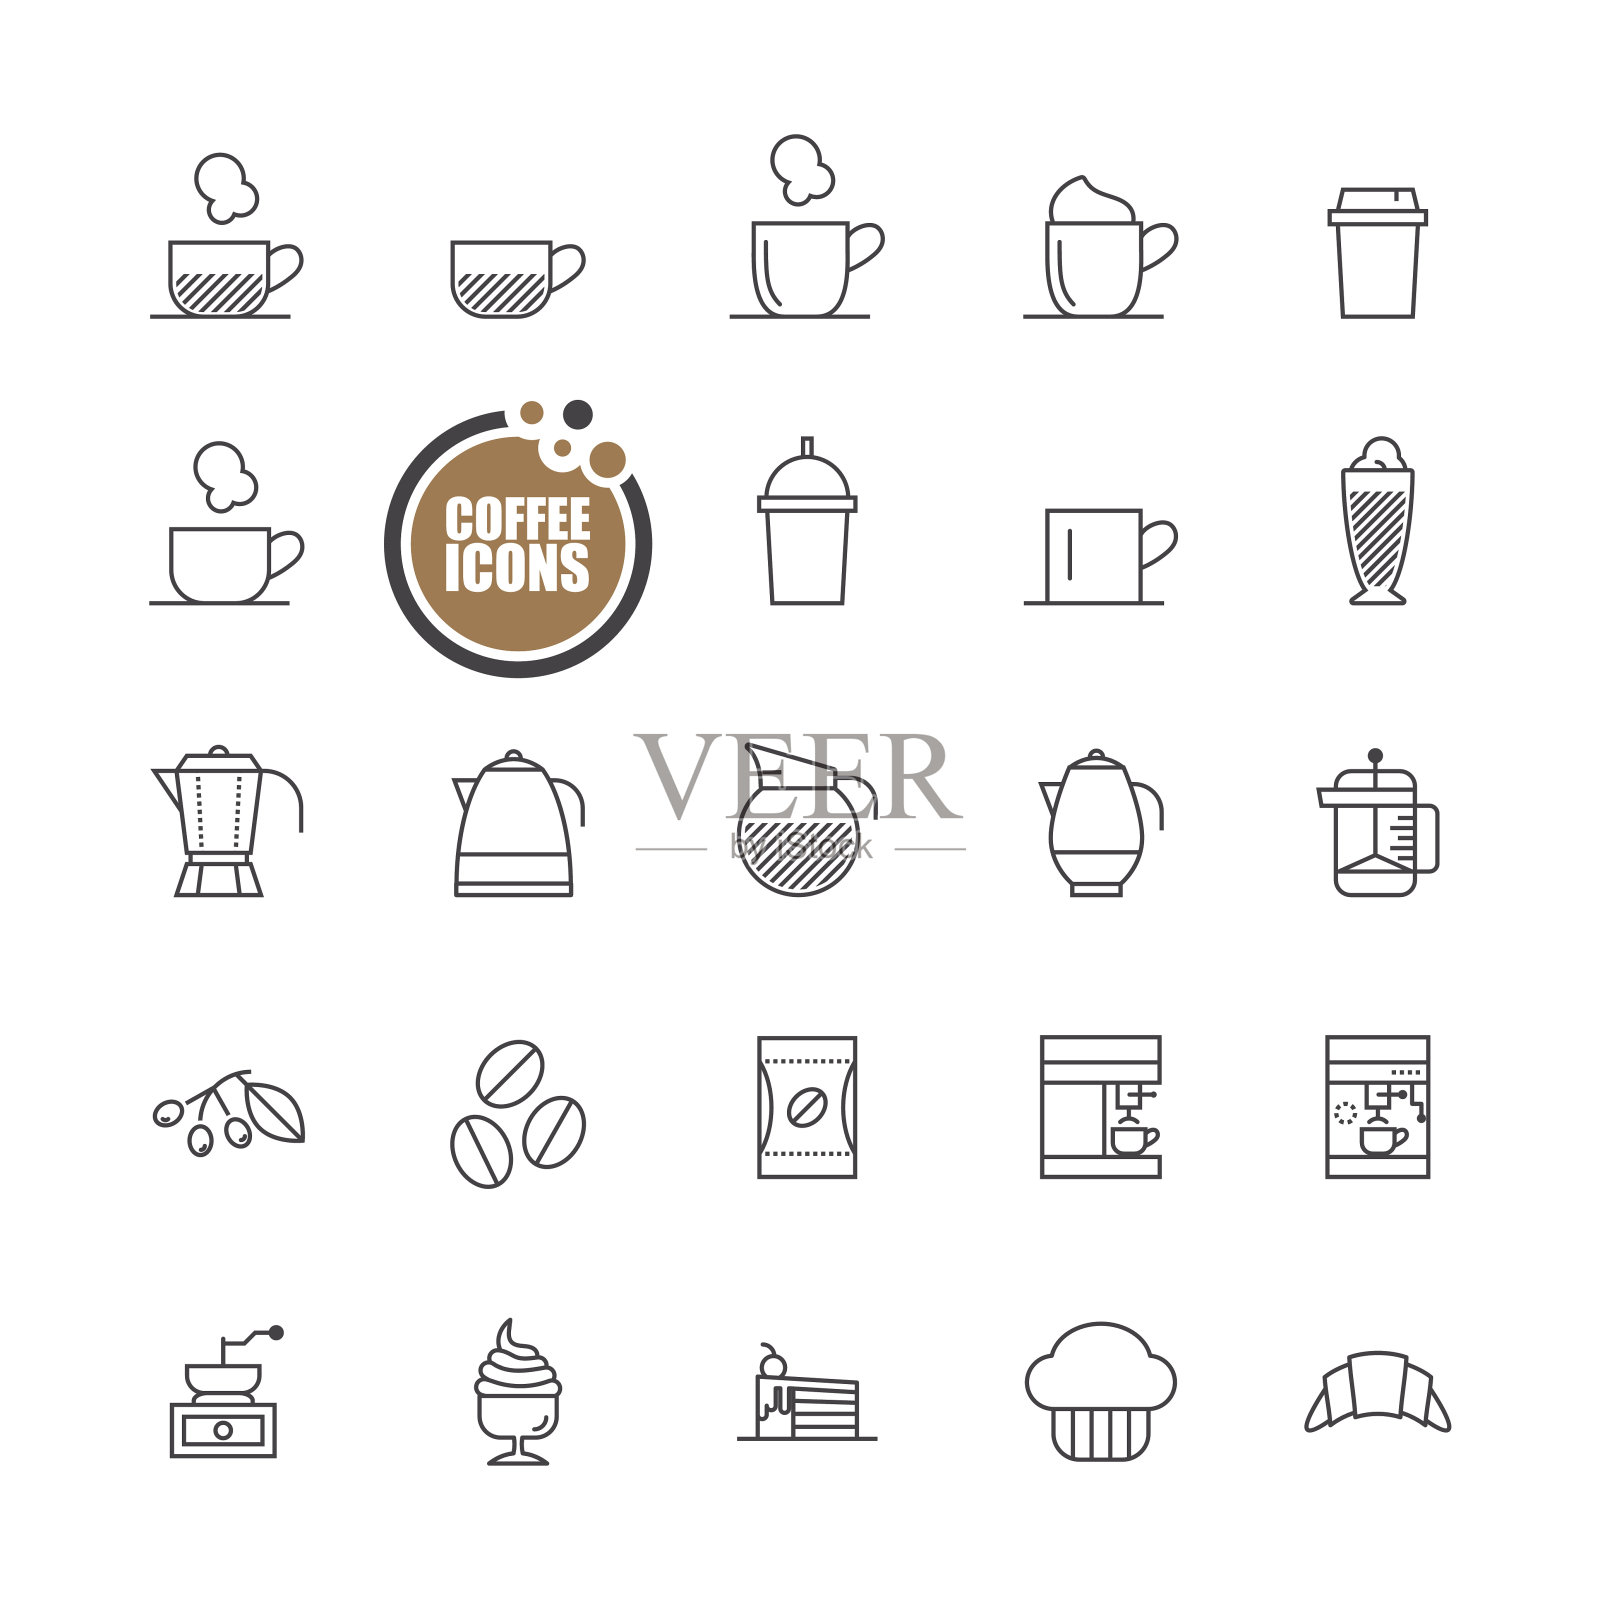 咖啡和面包店的图标系列图标素材